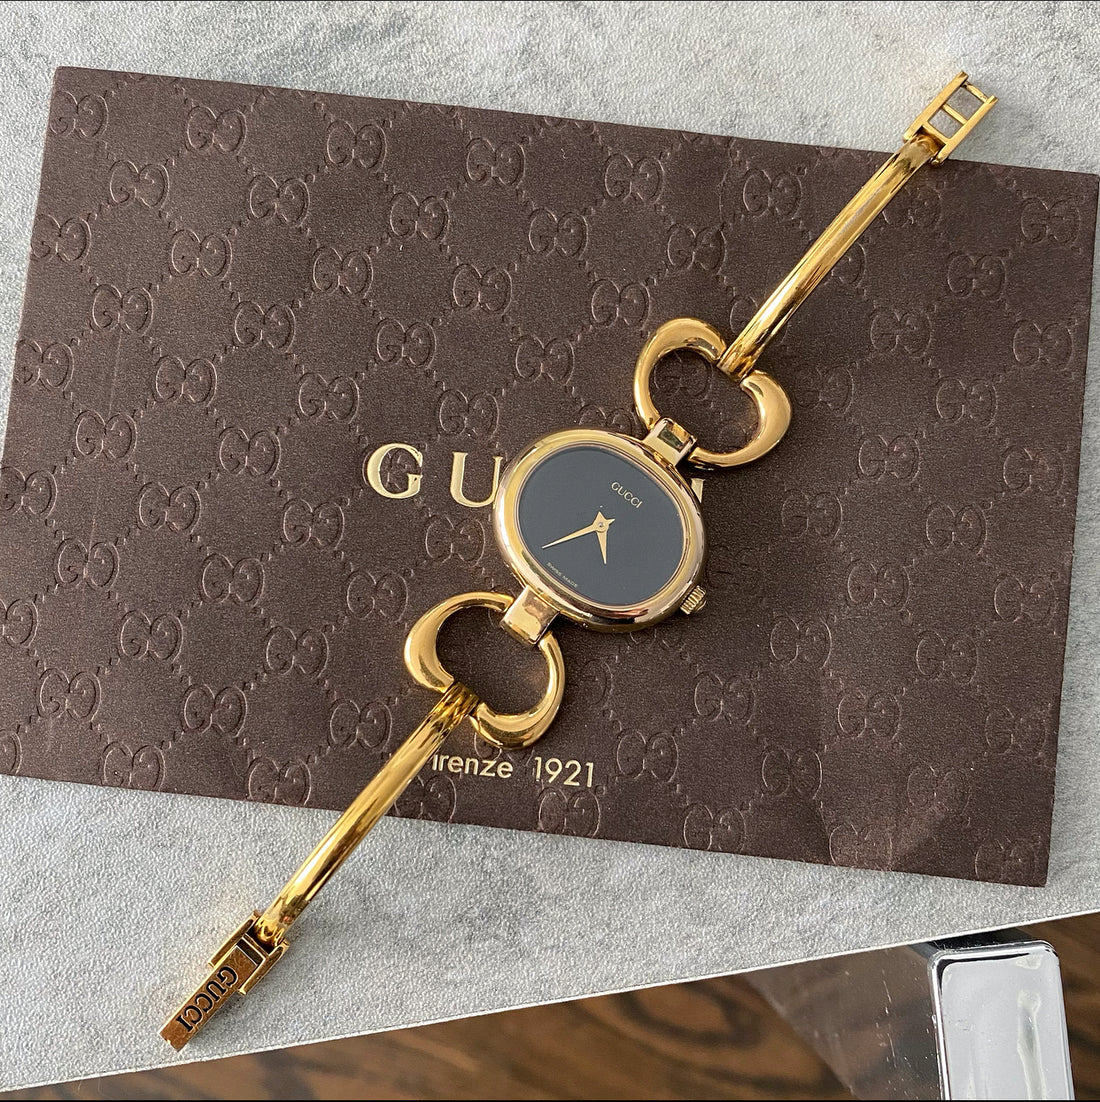 Gucci 1600 Goldtone Bracelet Watch 